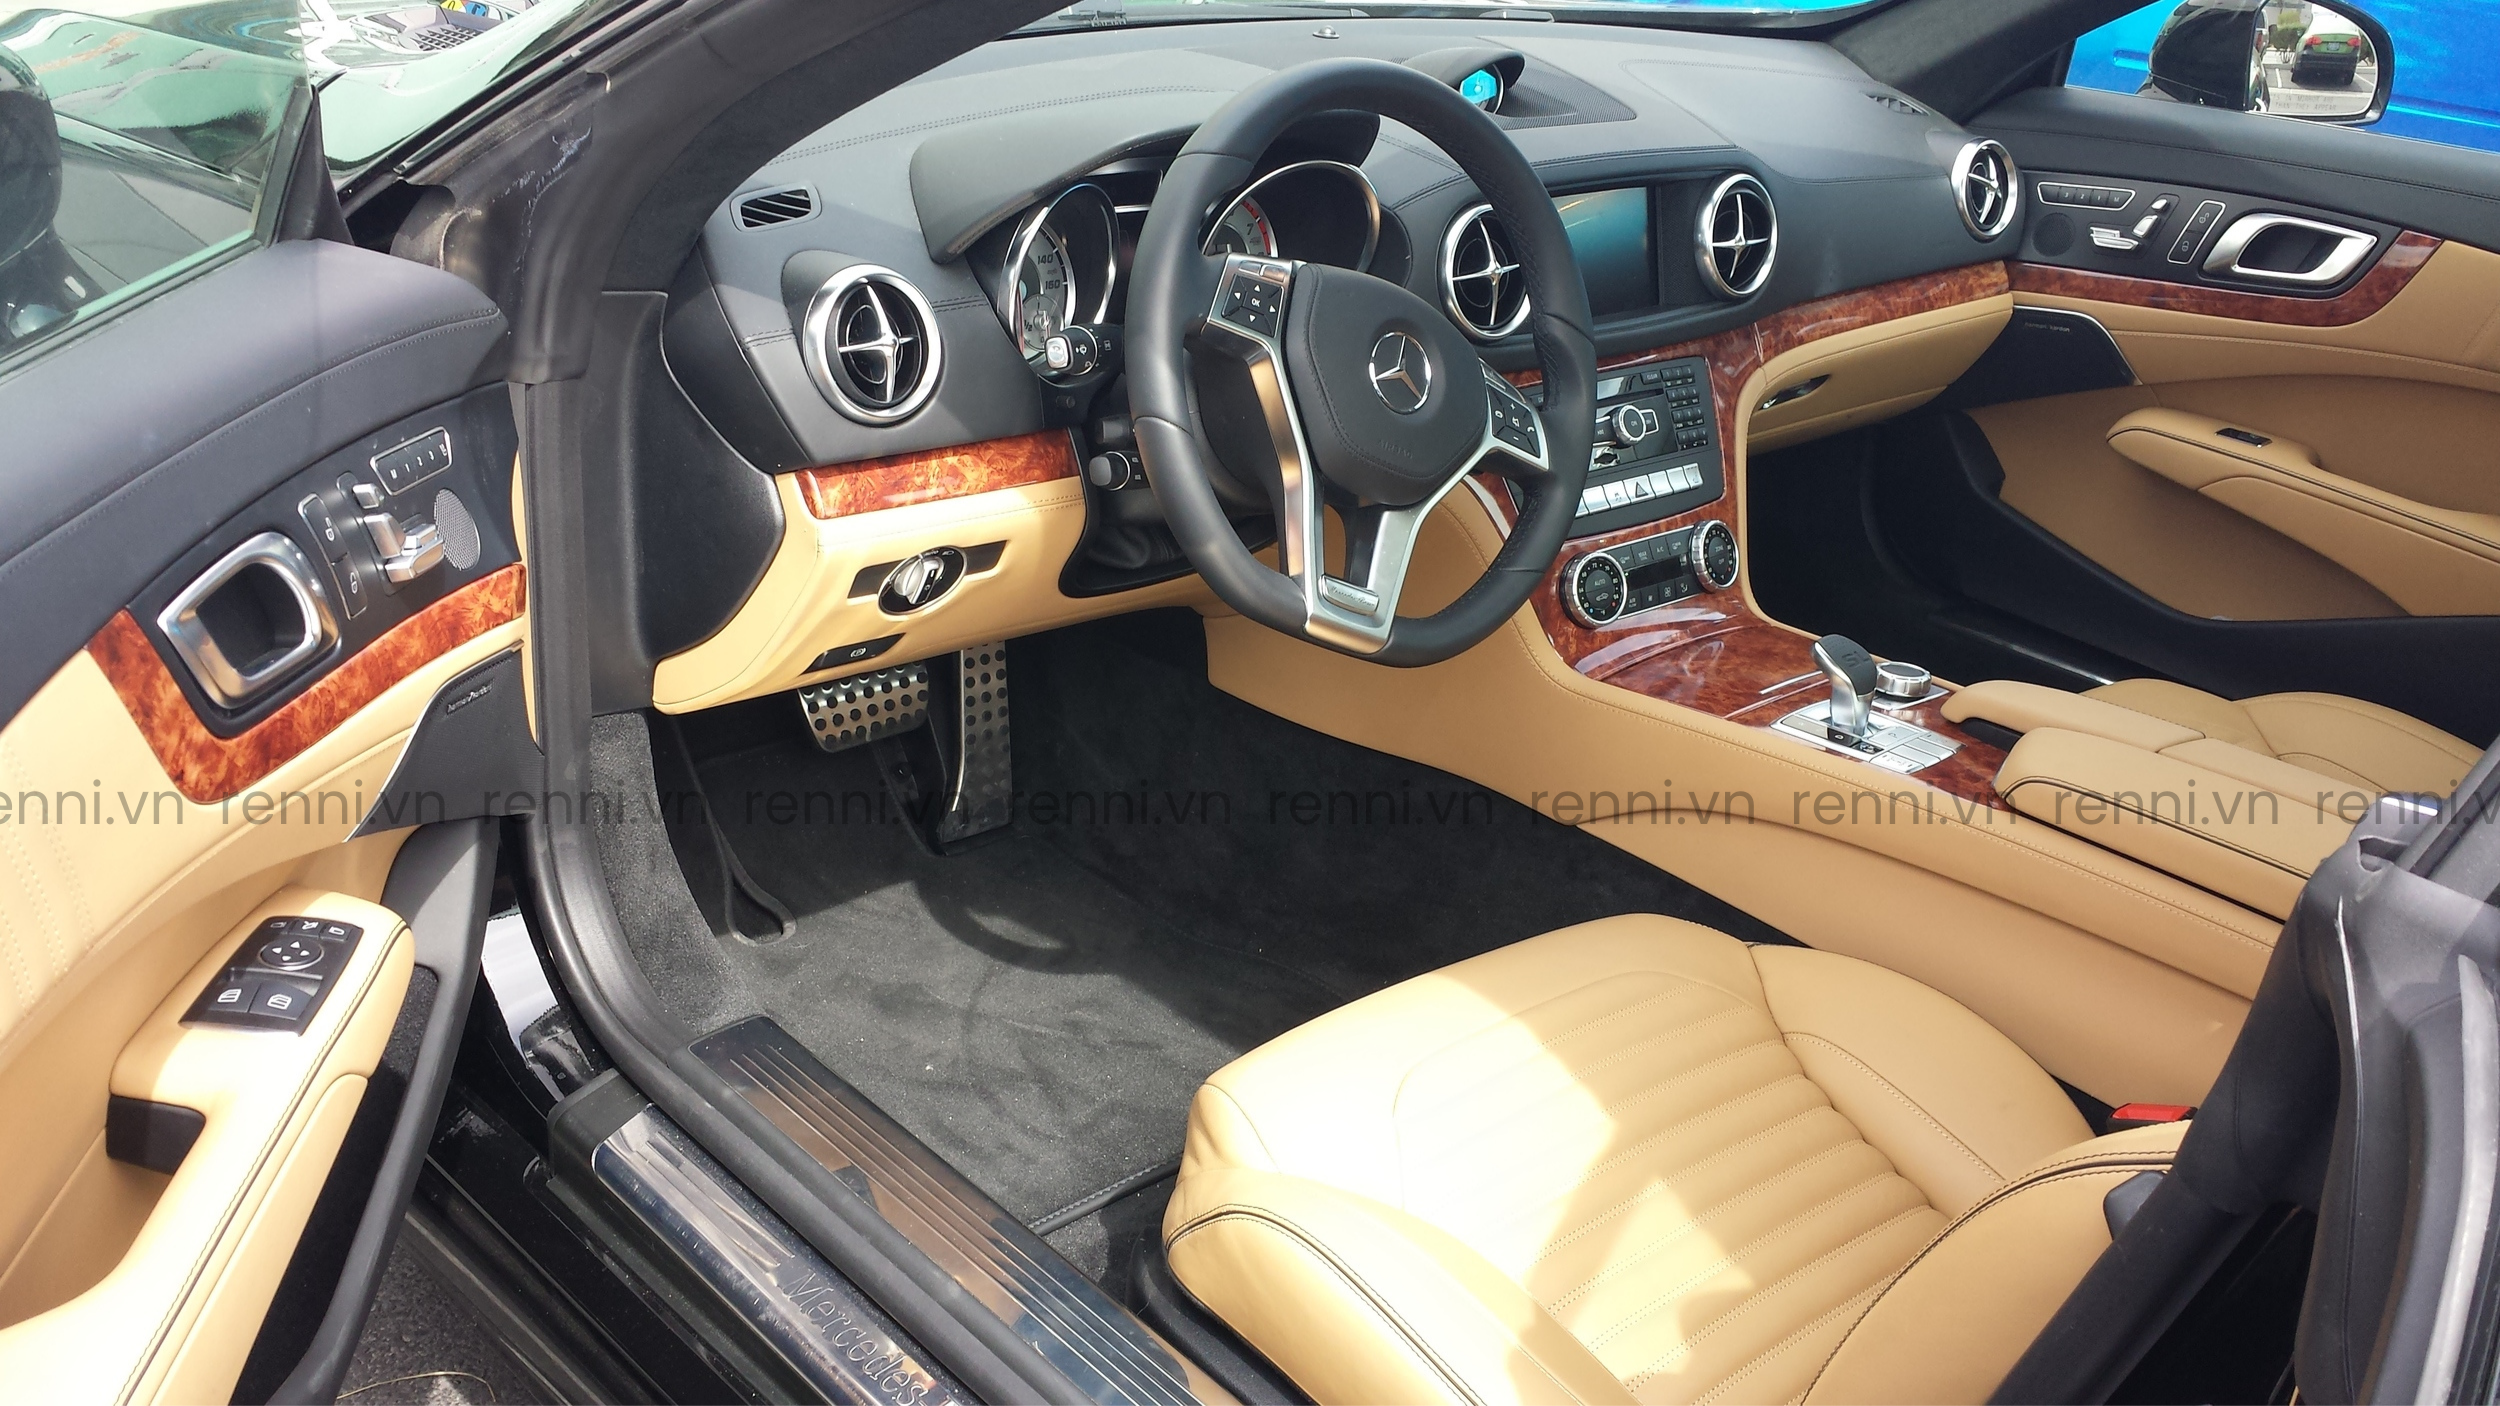 Sơn nhúng vân gỗ cho các chi tiết nội thất ô tô Mercedes